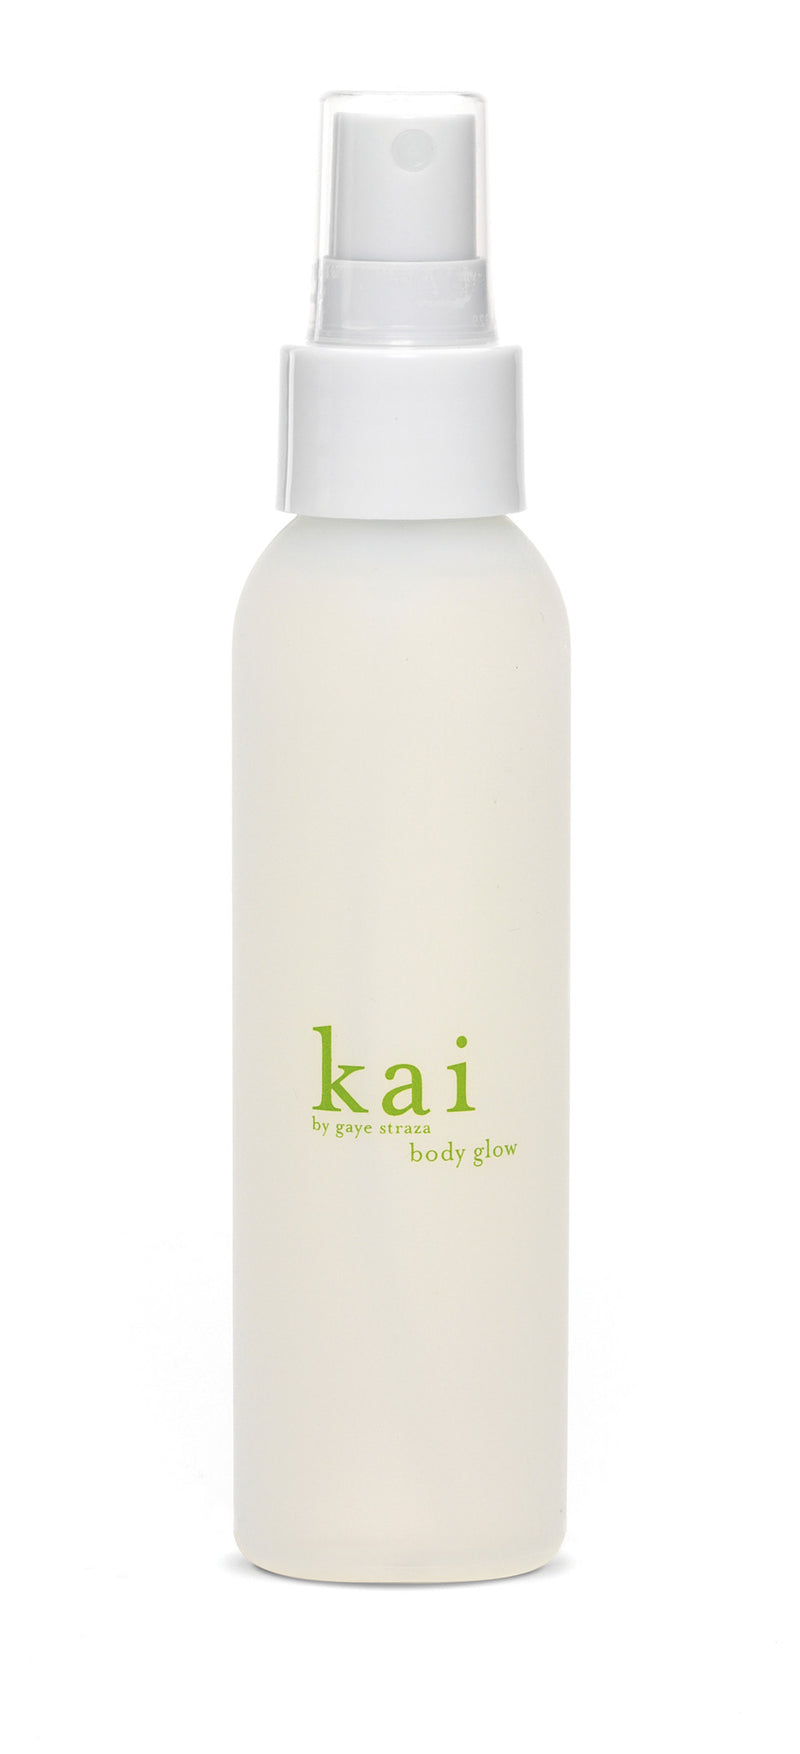 media image for kai body glow design by kai fragrance 1 270